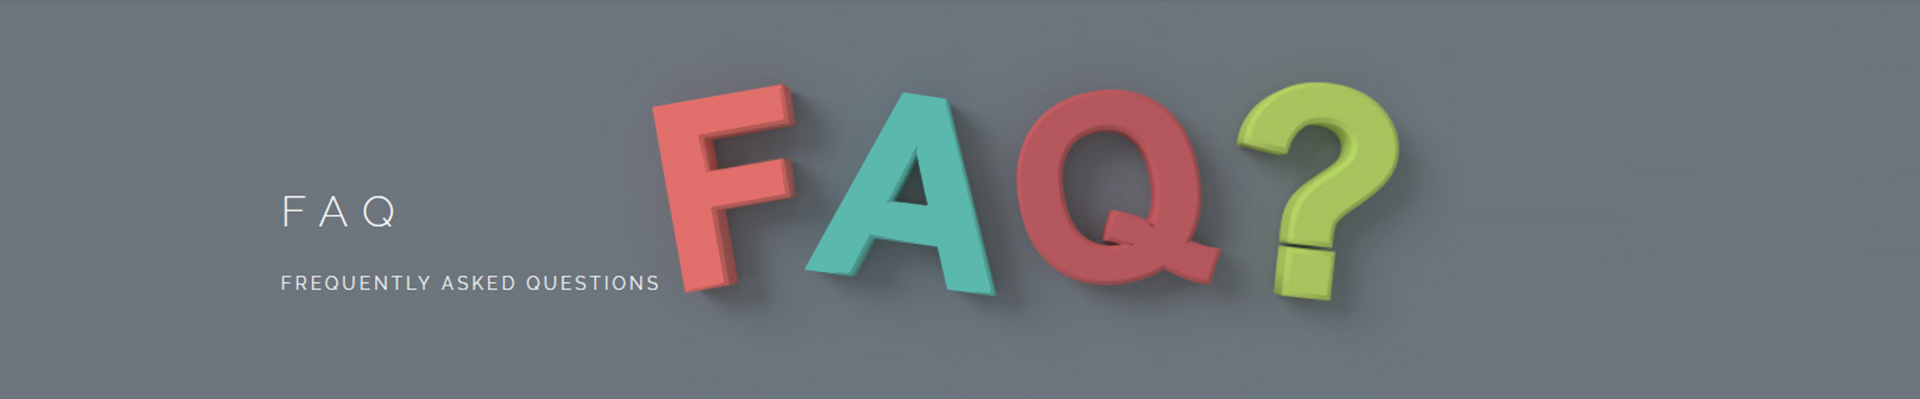 FAQs-banner